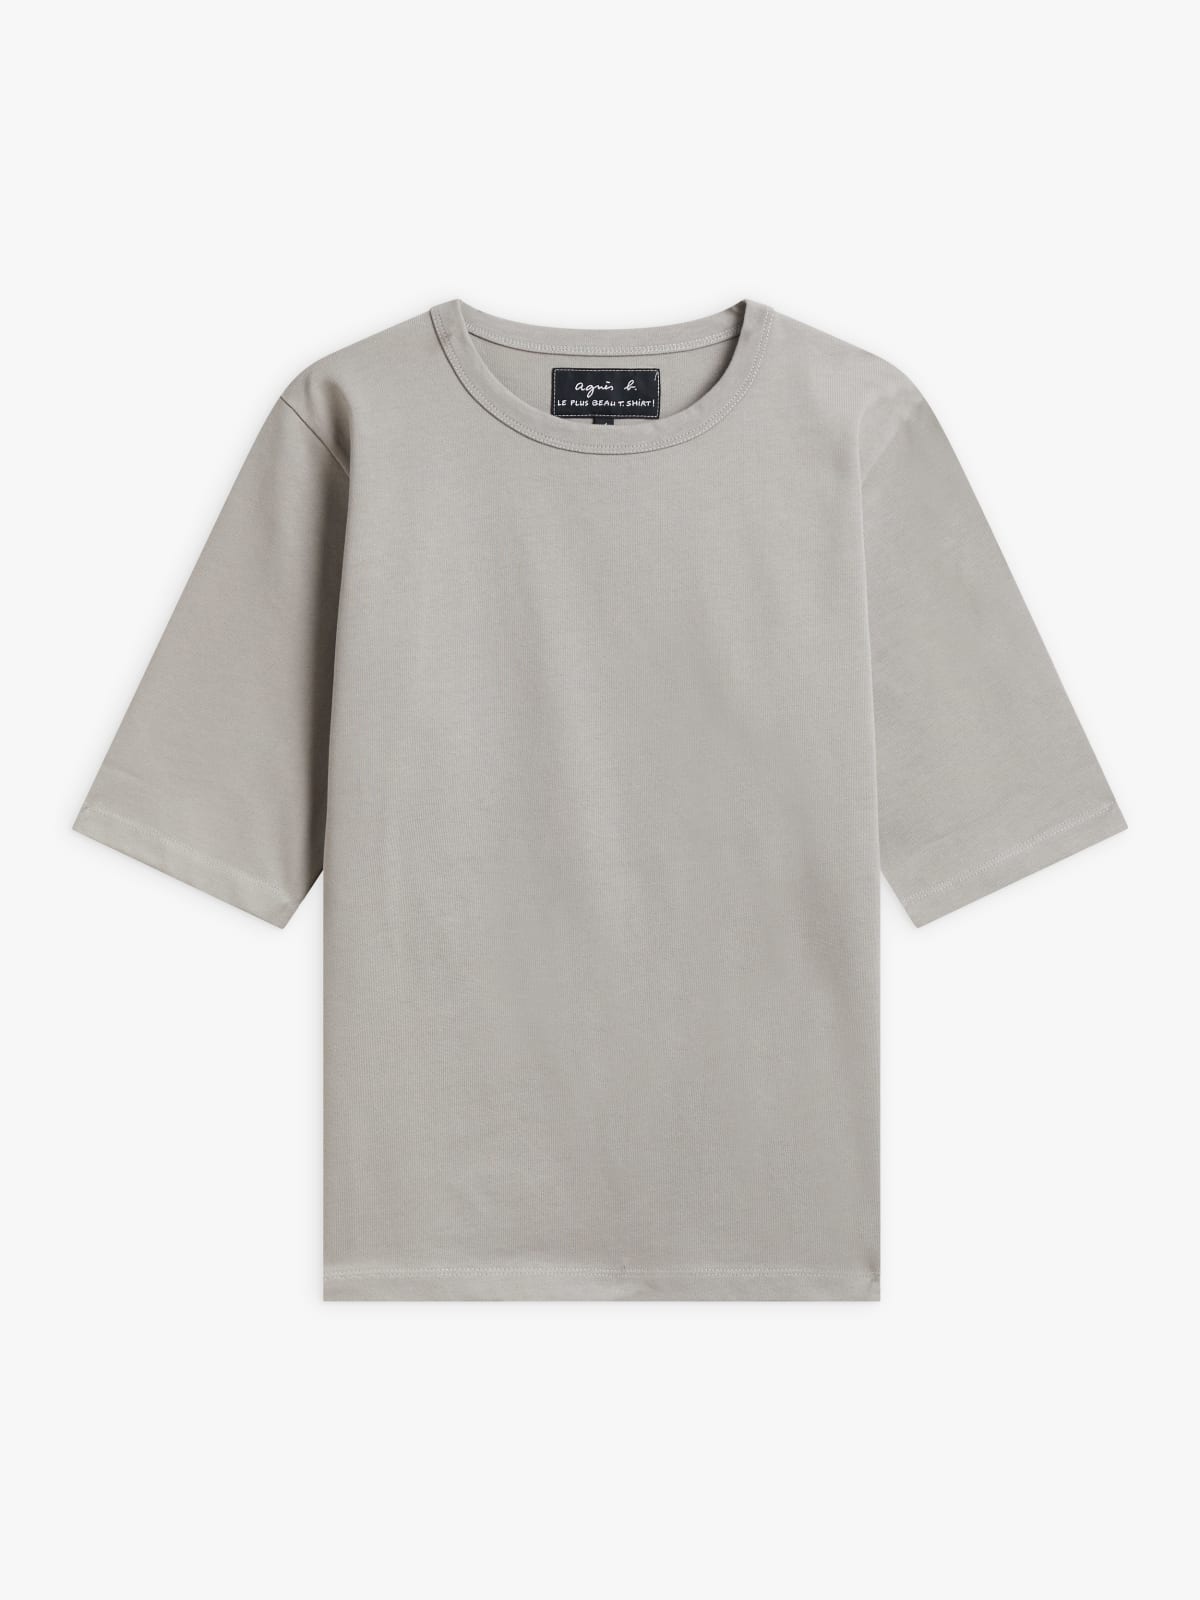 grey cotton Brando t-shirt